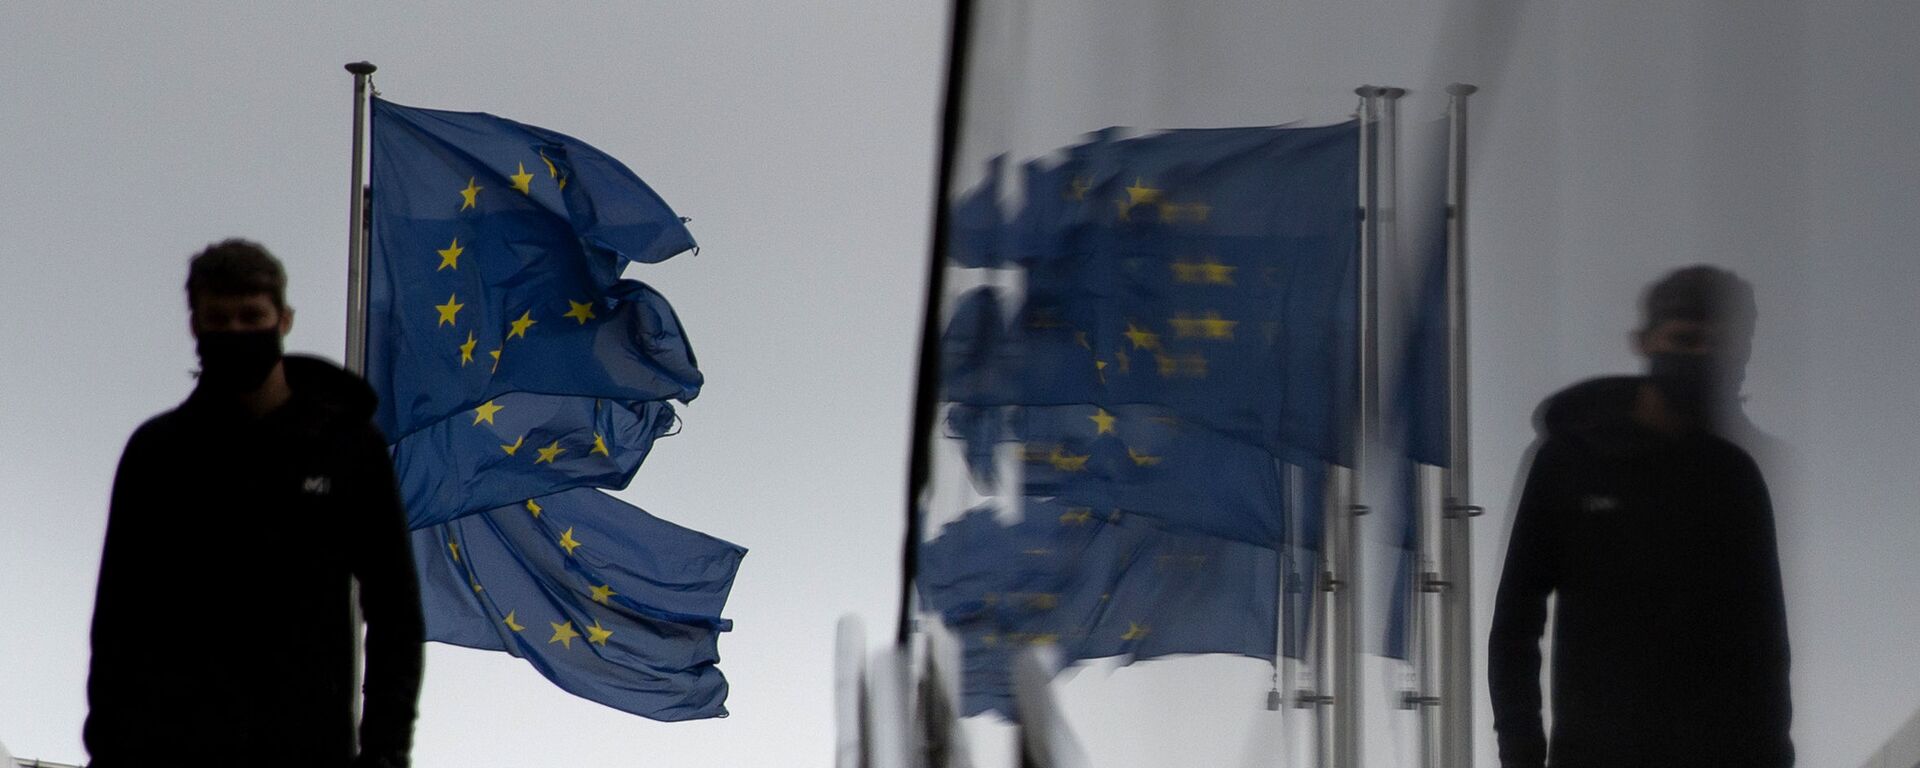 Мужчина идет мимо флагов ЕС у штаб-квартиры ЕС в Брюсселе - Sputnik Южная Осетия, 1920, 10.12.2020